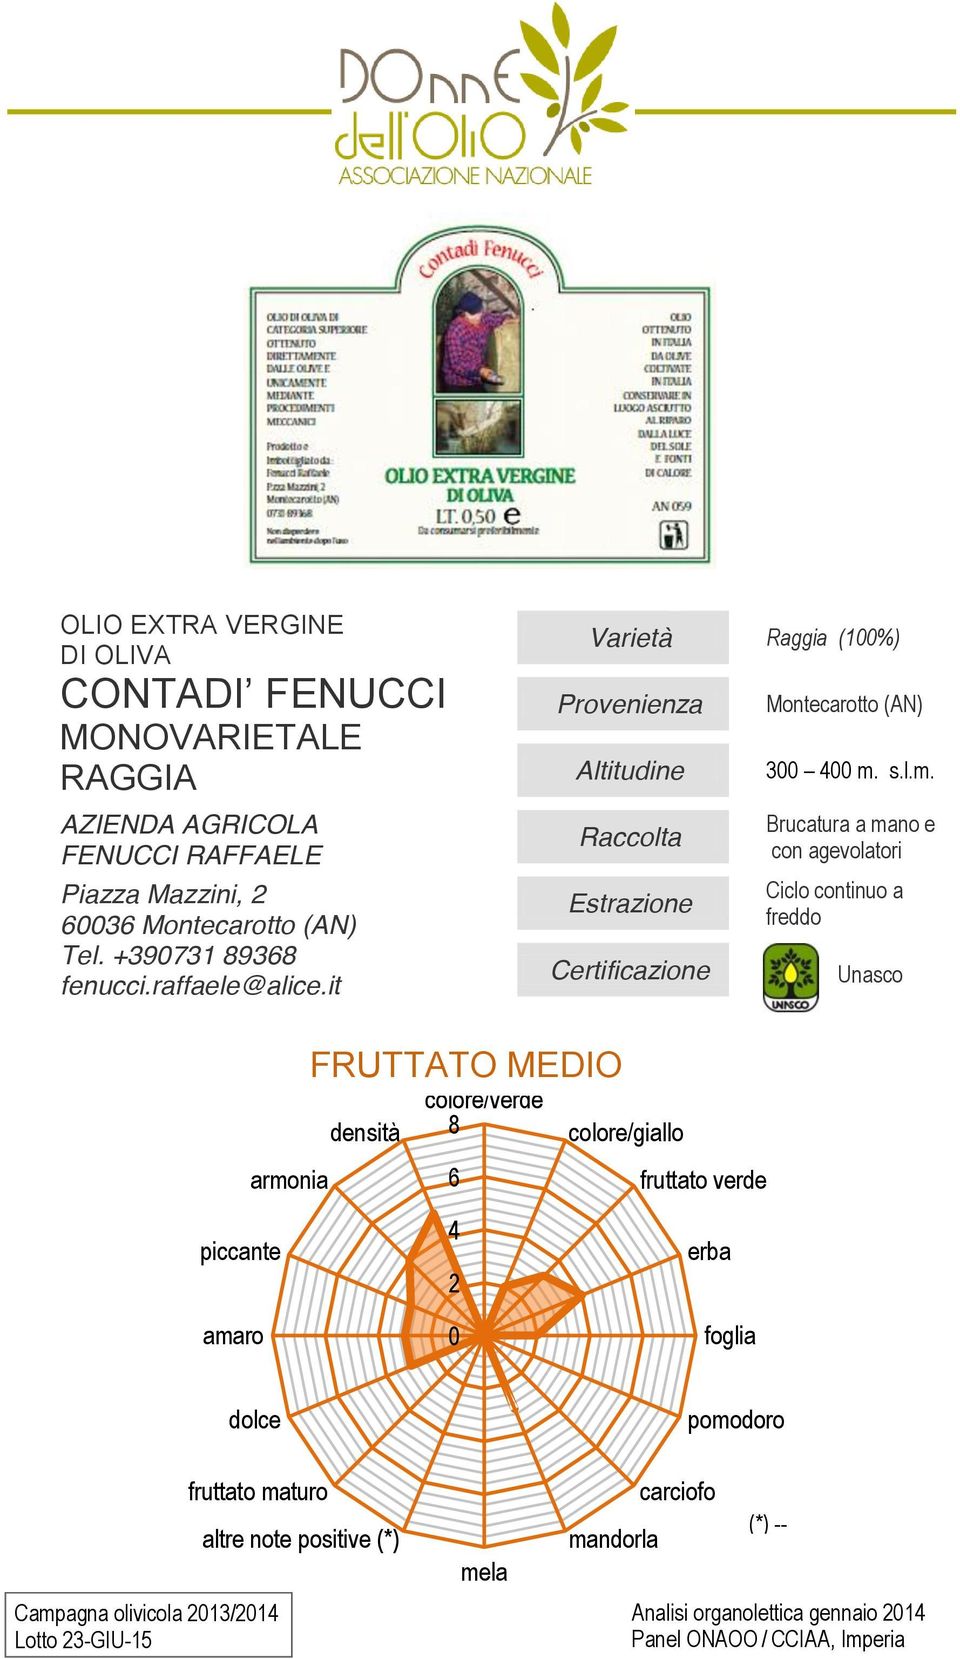 +39731 93 fenucci.raffaele@alice.it Raggia (1%) Montecarotto (AN) 3 m.